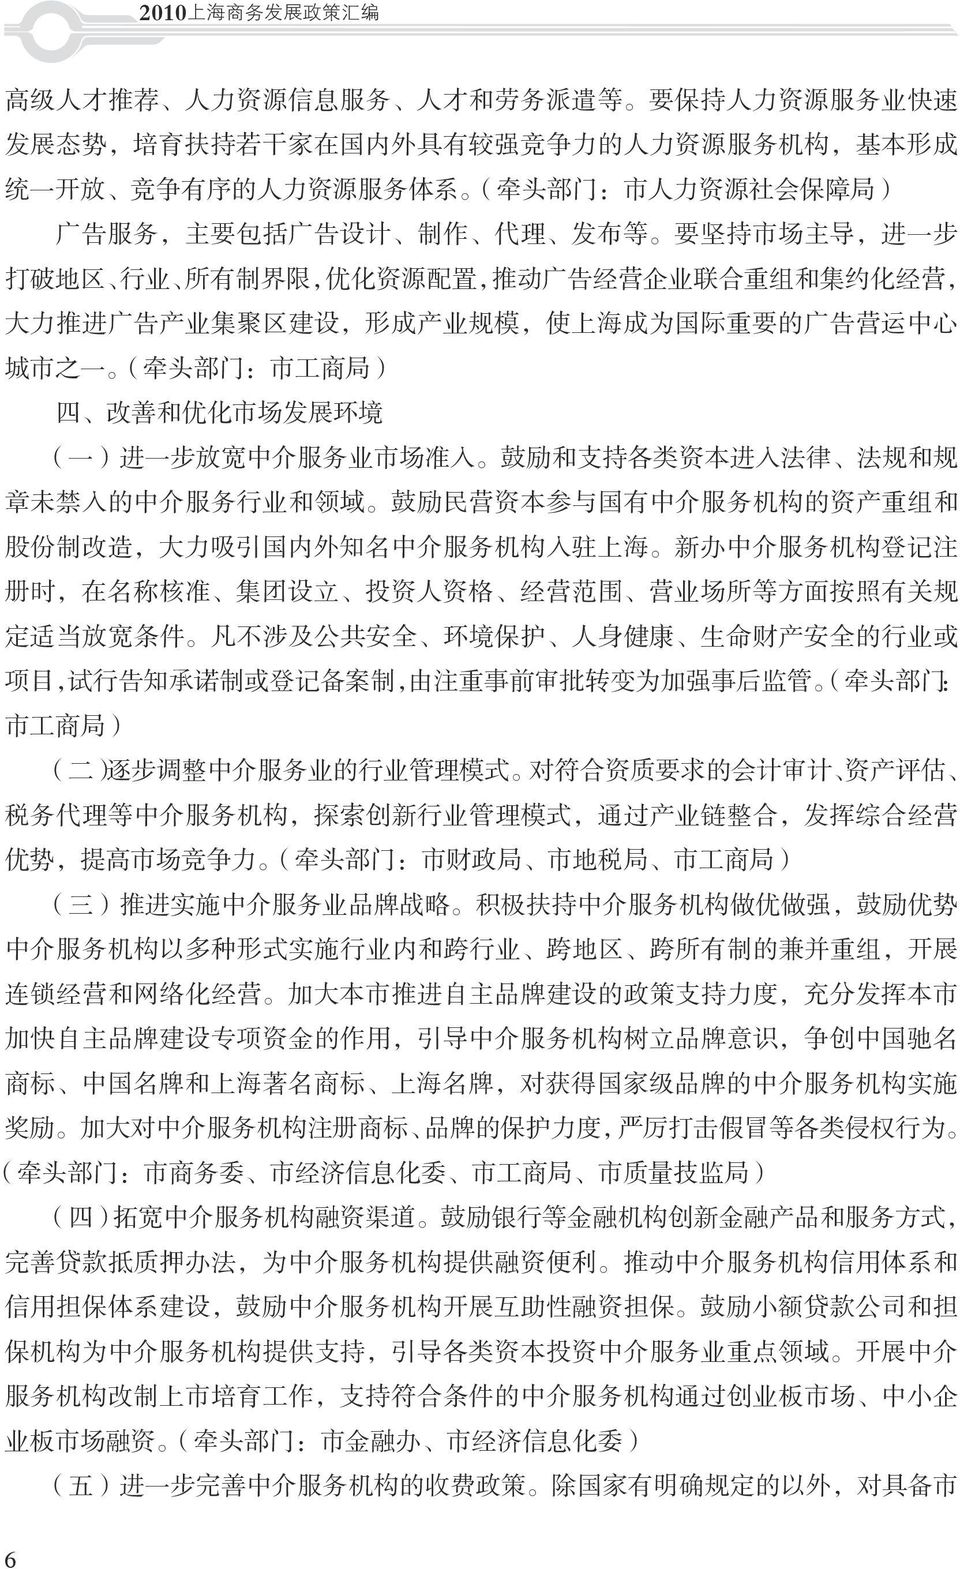 业 规 模, 使 上 海 成 为 国 际 重 要 的 广 告 营 运 中 心 城 市 之 一 ( 牵 头 部 门 : 市 工 商 局 ) 四 改 善 和 优 化 市 场 发 展 环 境 ( 一 ) 进 一 步 放 宽 中 介 服 务 业 市 场 准 入 鼓 励 和 支 持 各 类 资 本 进 入 法 律 法 规 和 规 章 未 禁 入 的 中 介 服 务 行 业 和 领 域 鼓 励 民 营 资